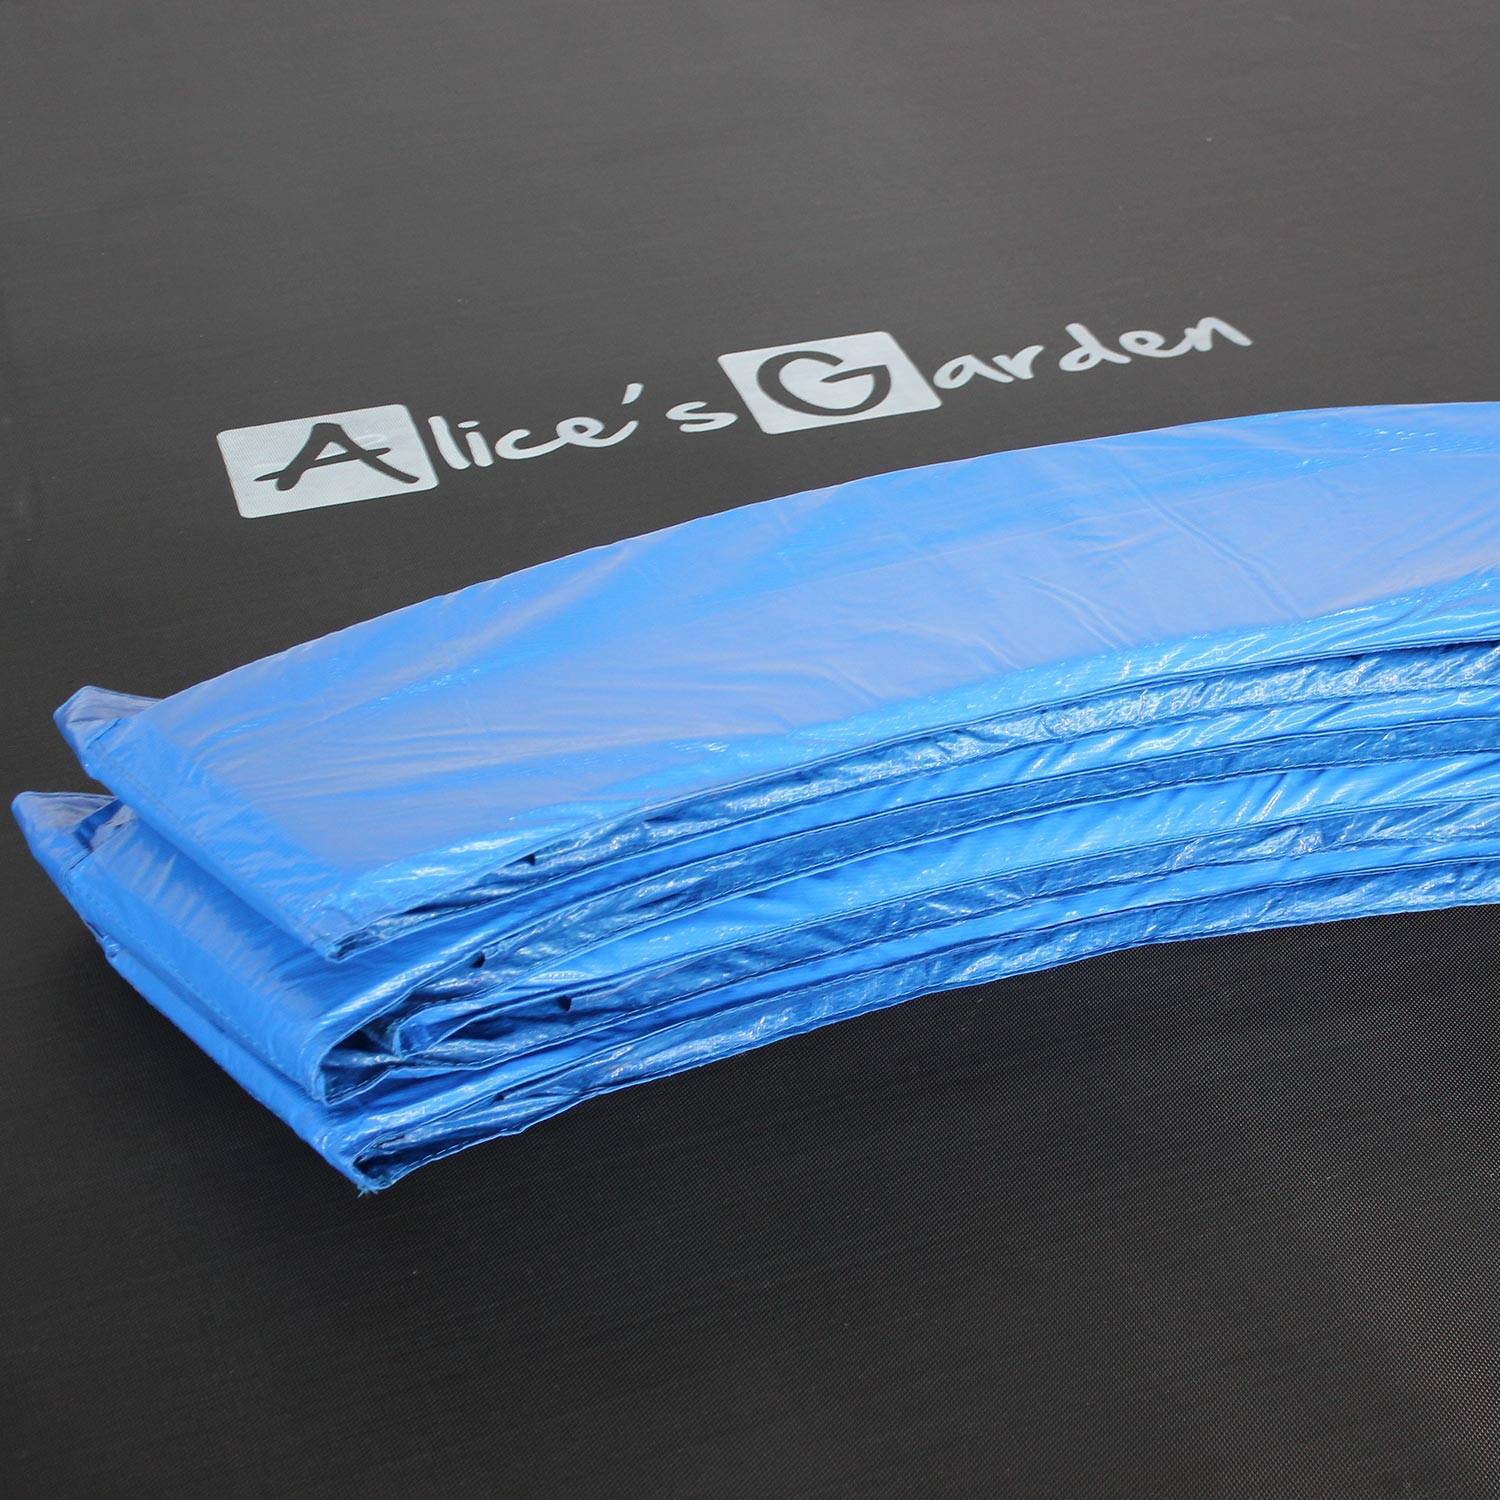 Trampolino 180cm, colore: Blu, con rete di protezione - modello: Cassiopée | Alta Qualità  | Norme UE. Photo6